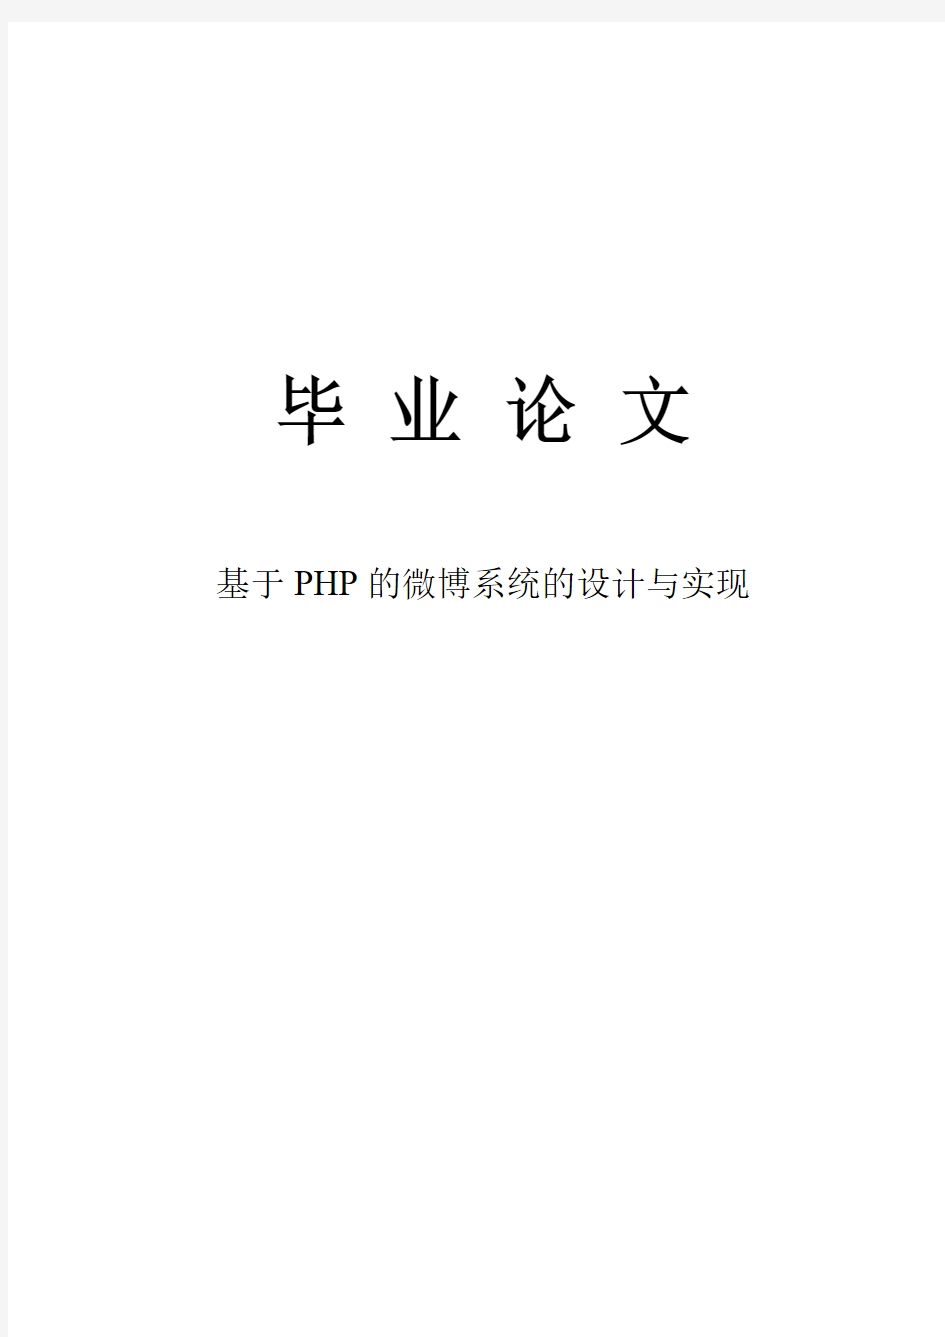 基于PHP的微博系统的设计与实现毕业设计论文